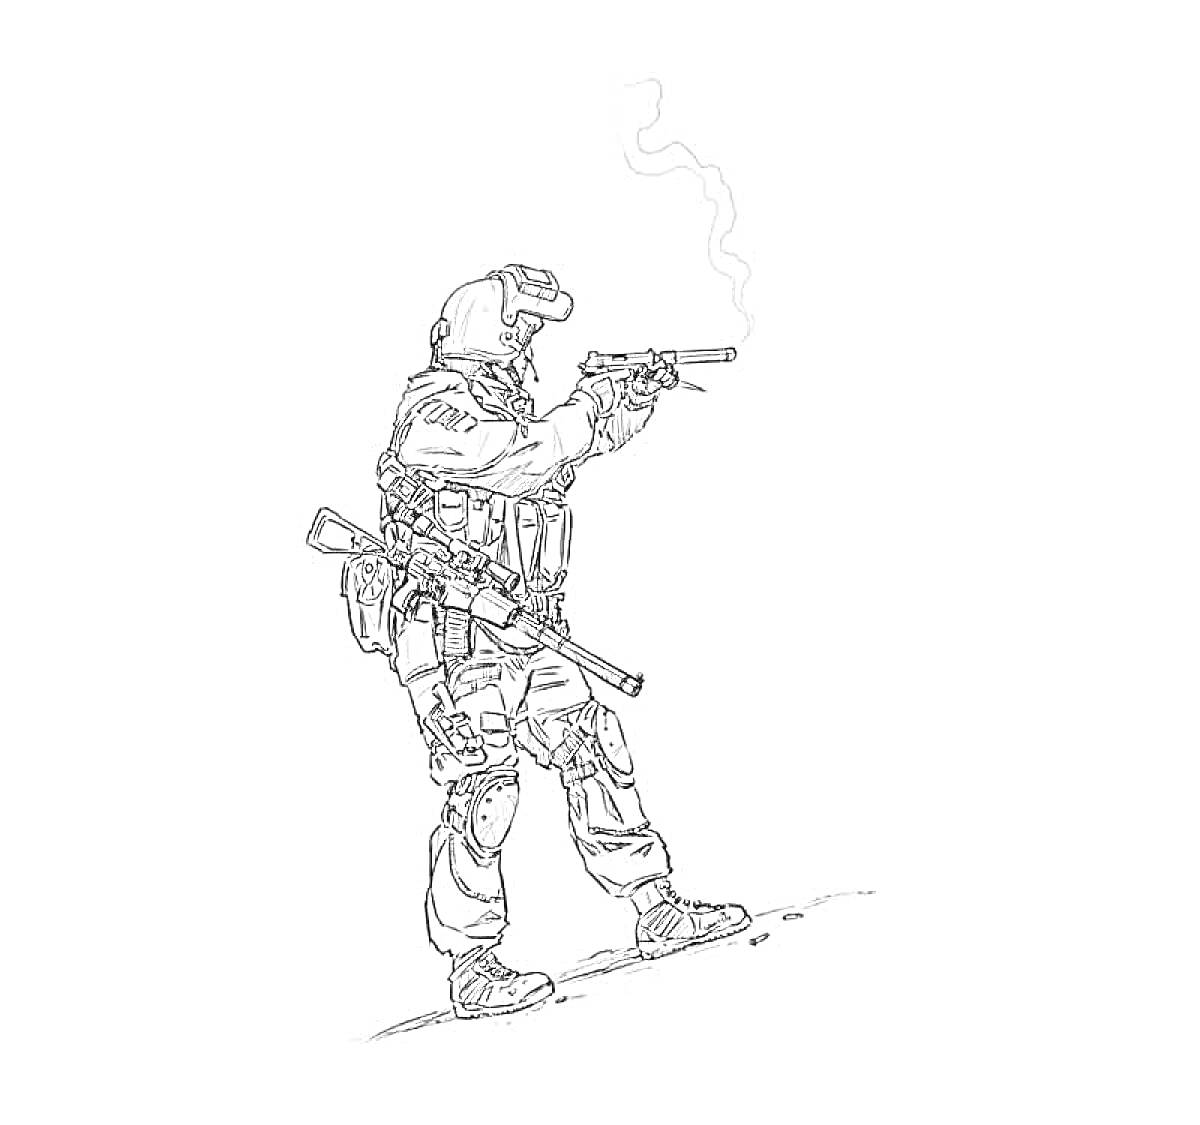 Солдат спецназа с пистолетом, винтовкой, защитной экипировкой и шлемом